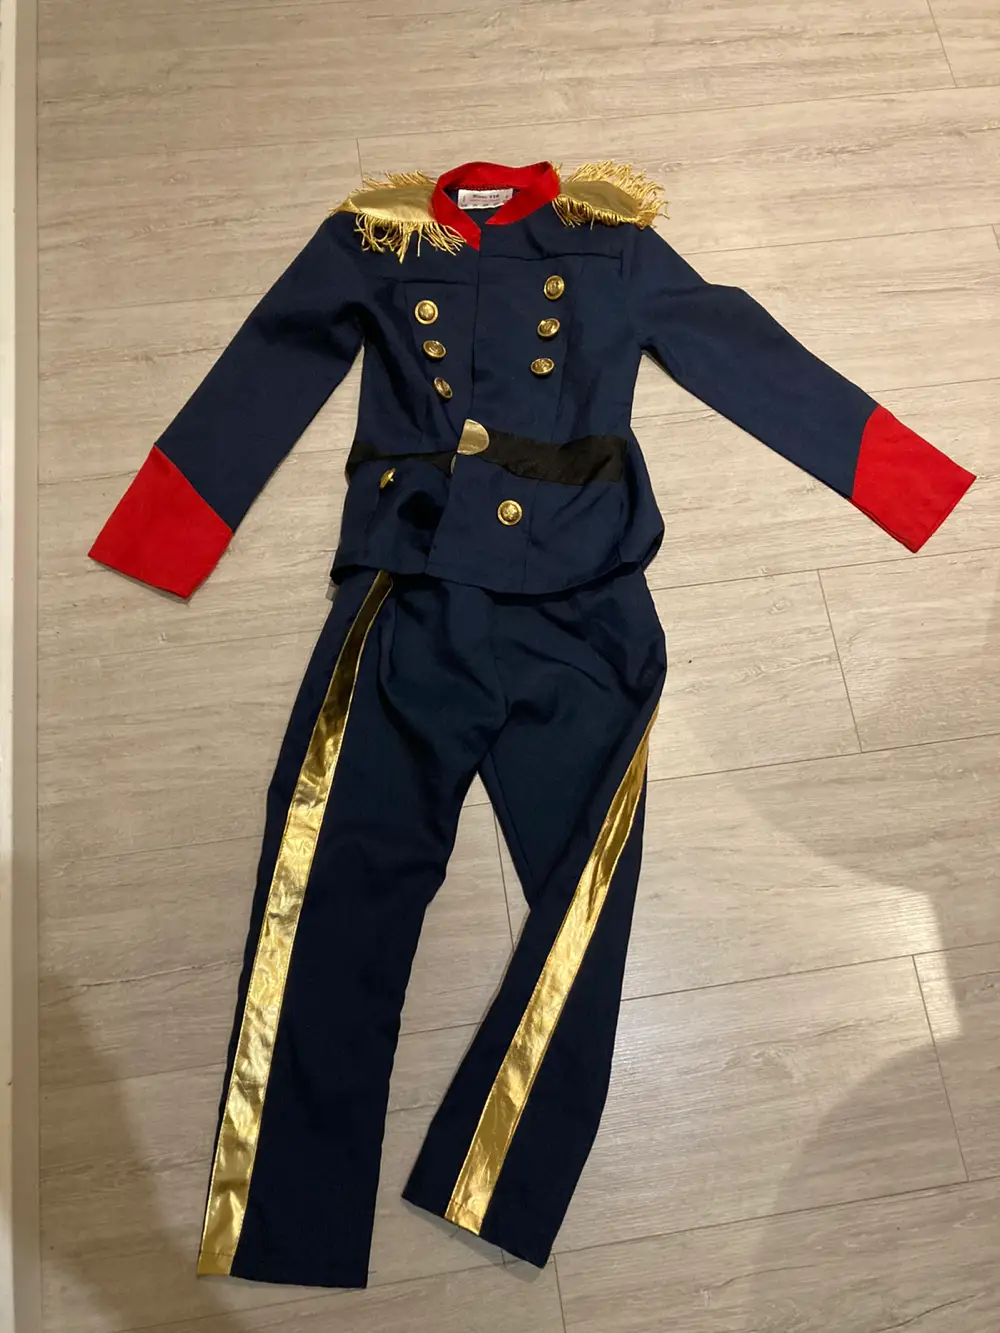 Køb Soldat kostume i størrelse 116 Eline på Reshopper · Shop secondhand til børn, mor og bolig